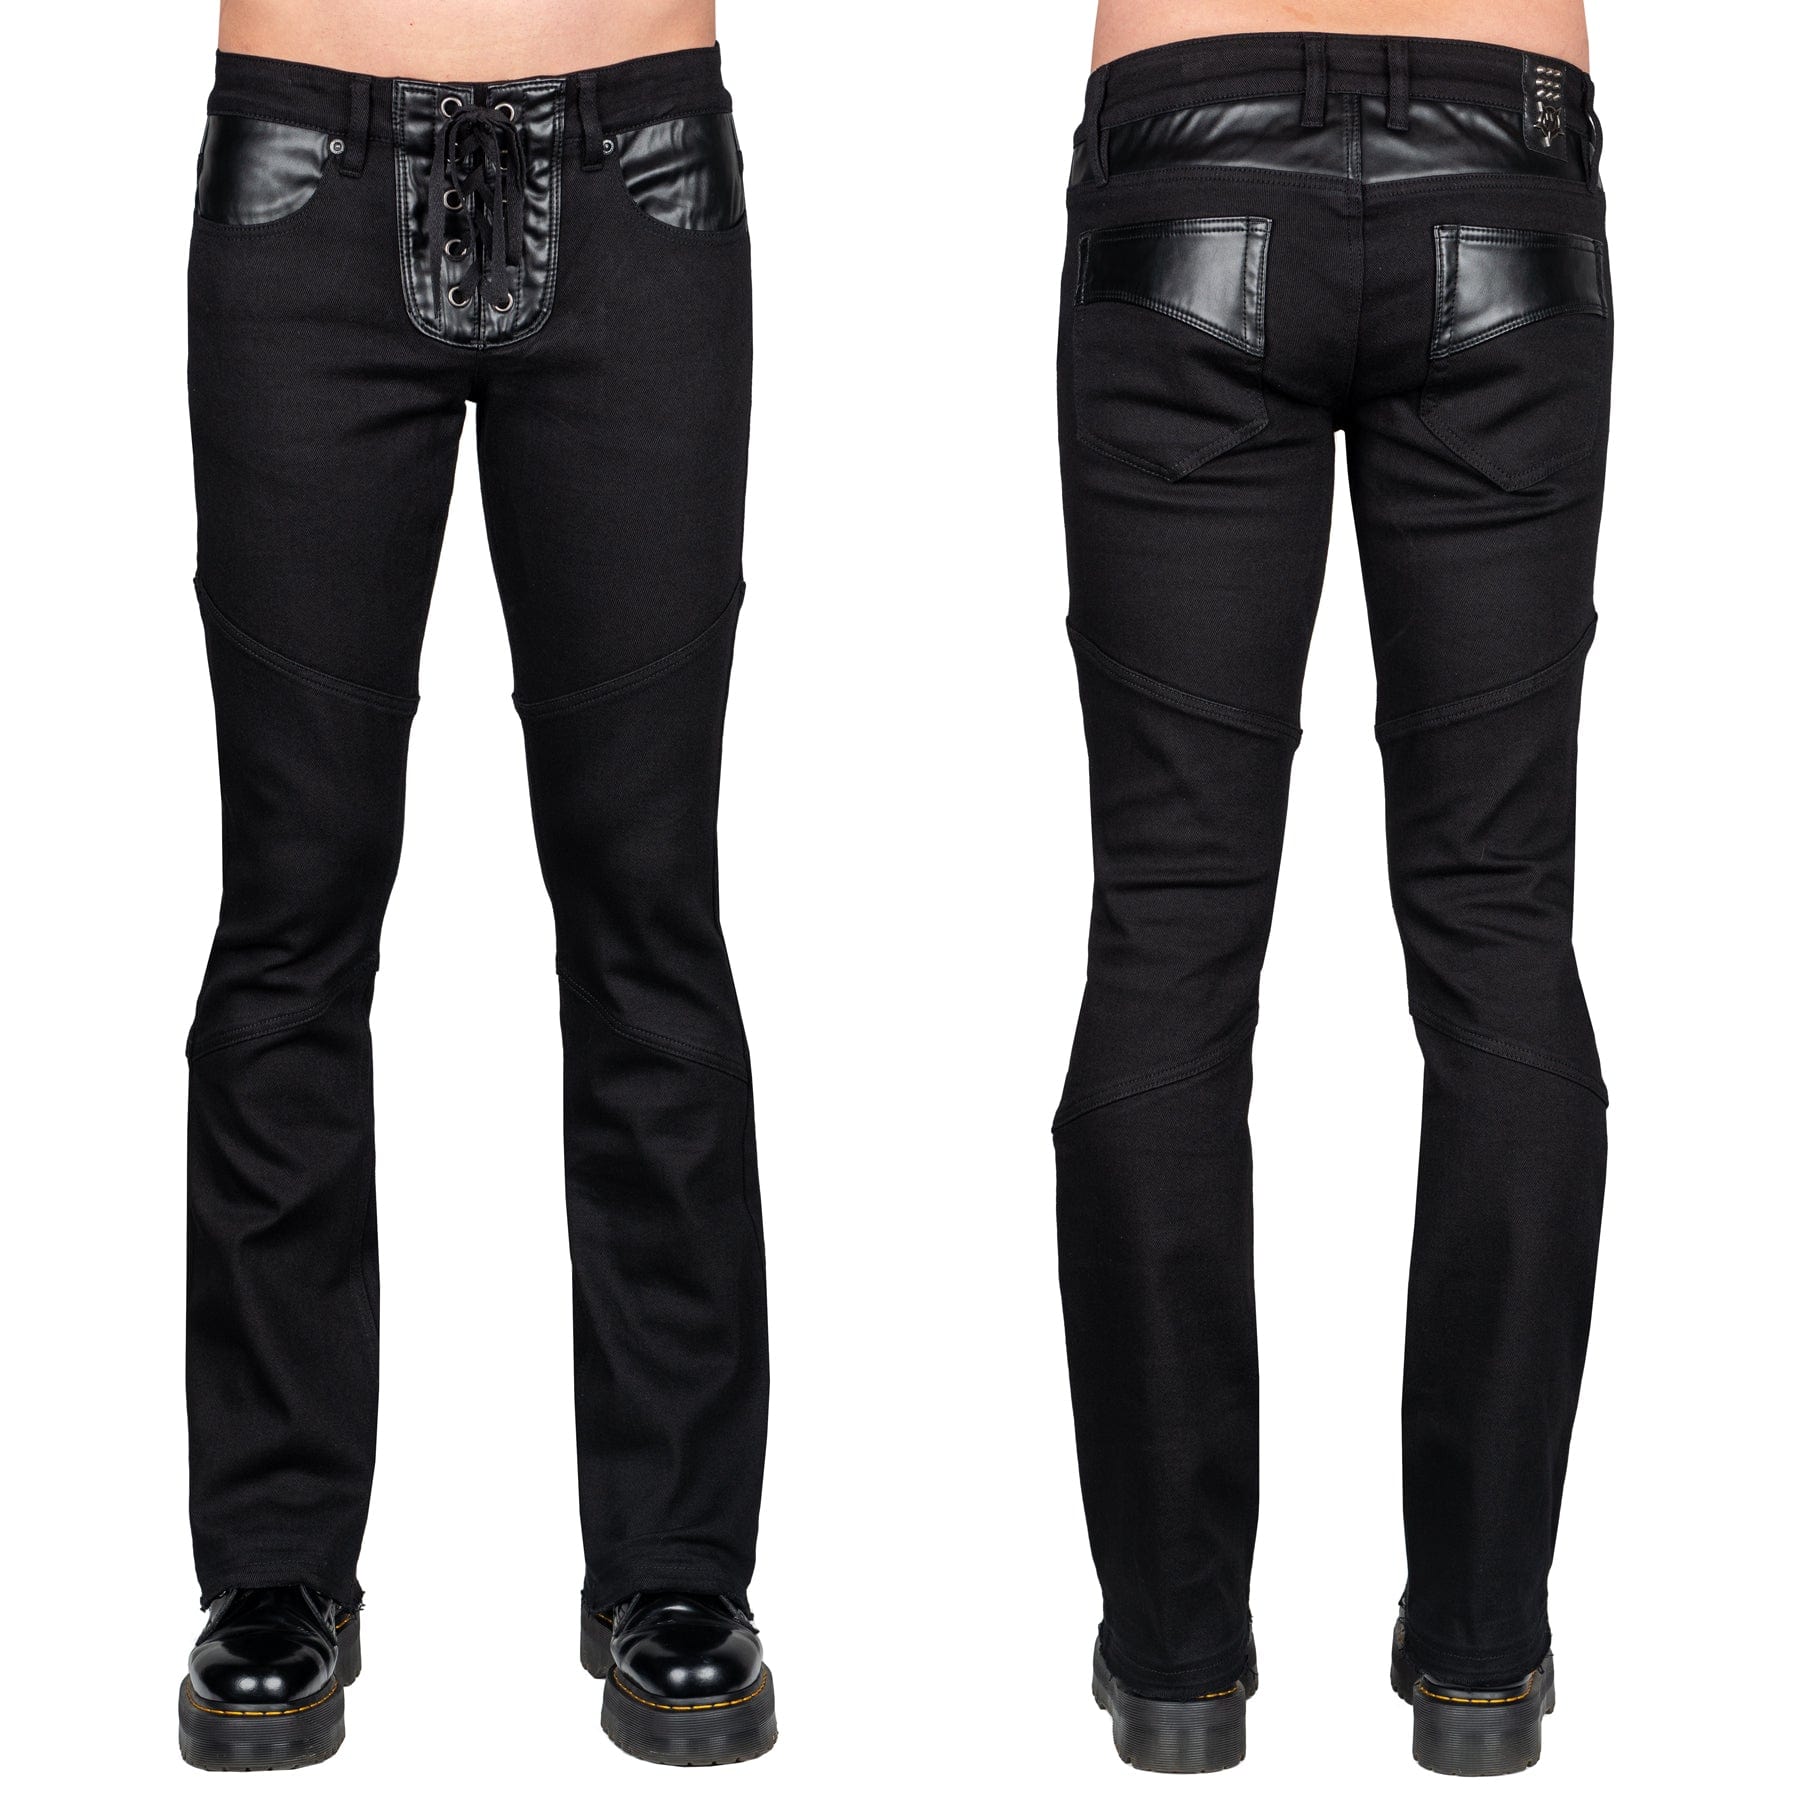 Wornstar Clothing Mens Jeans. Troubadour Denim Jeans - Black